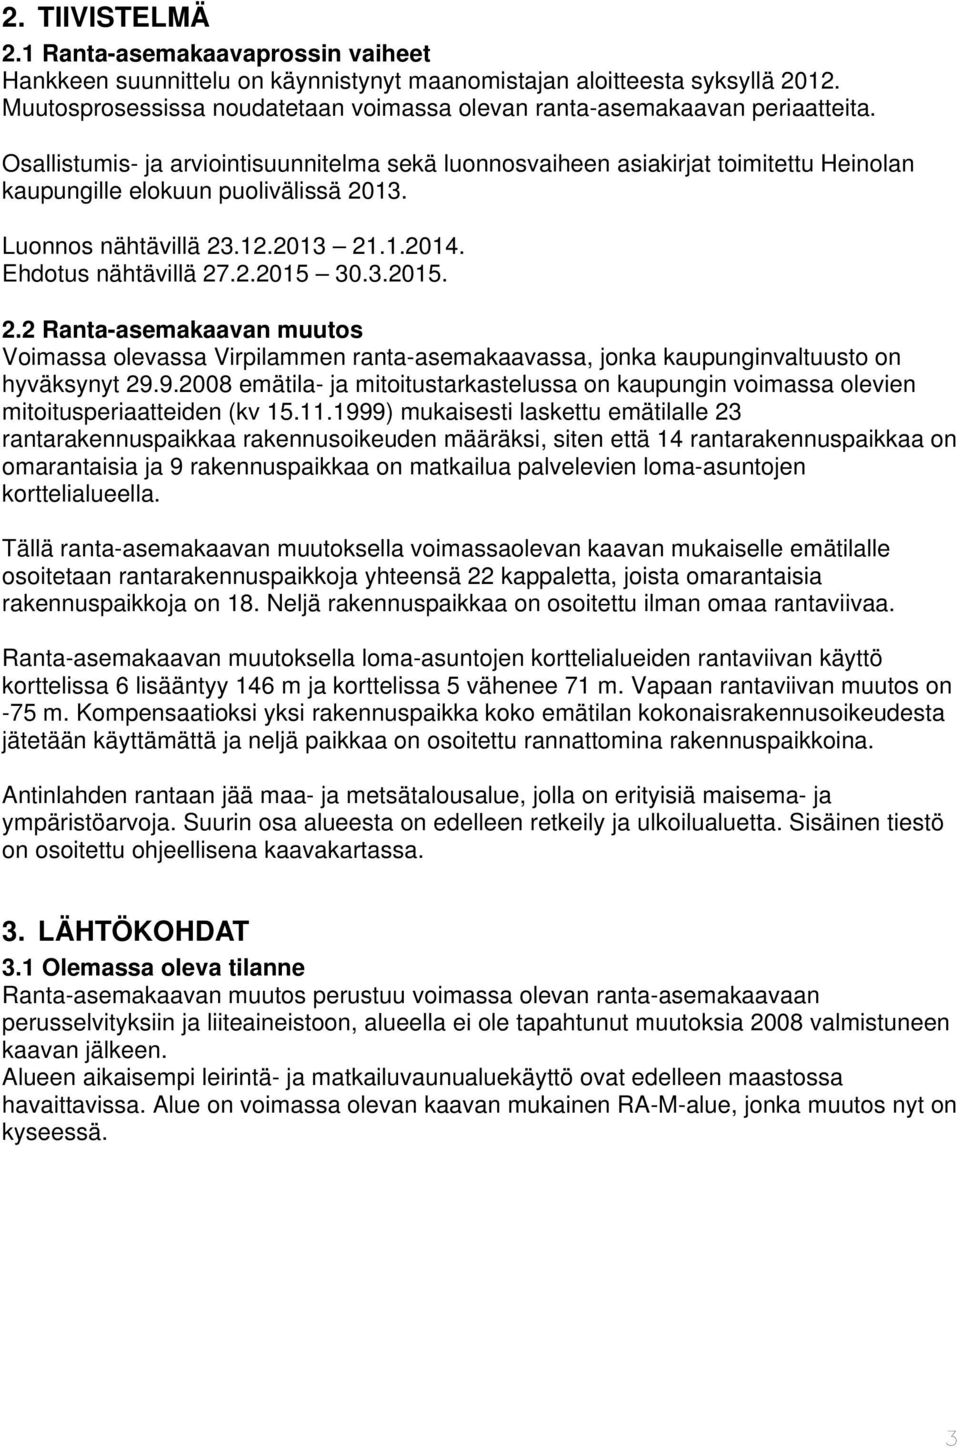 Osallistumis- ja arviointisuunnitelma sekä luonnosvaiheen asiakirjat toimitettu Heinolan kaupungille elokuun puolivälissä 2013. Luonnos nähtävillä 23.12.2013 21.1.2014. Ehdotus nähtävillä 27.2.2015 30.